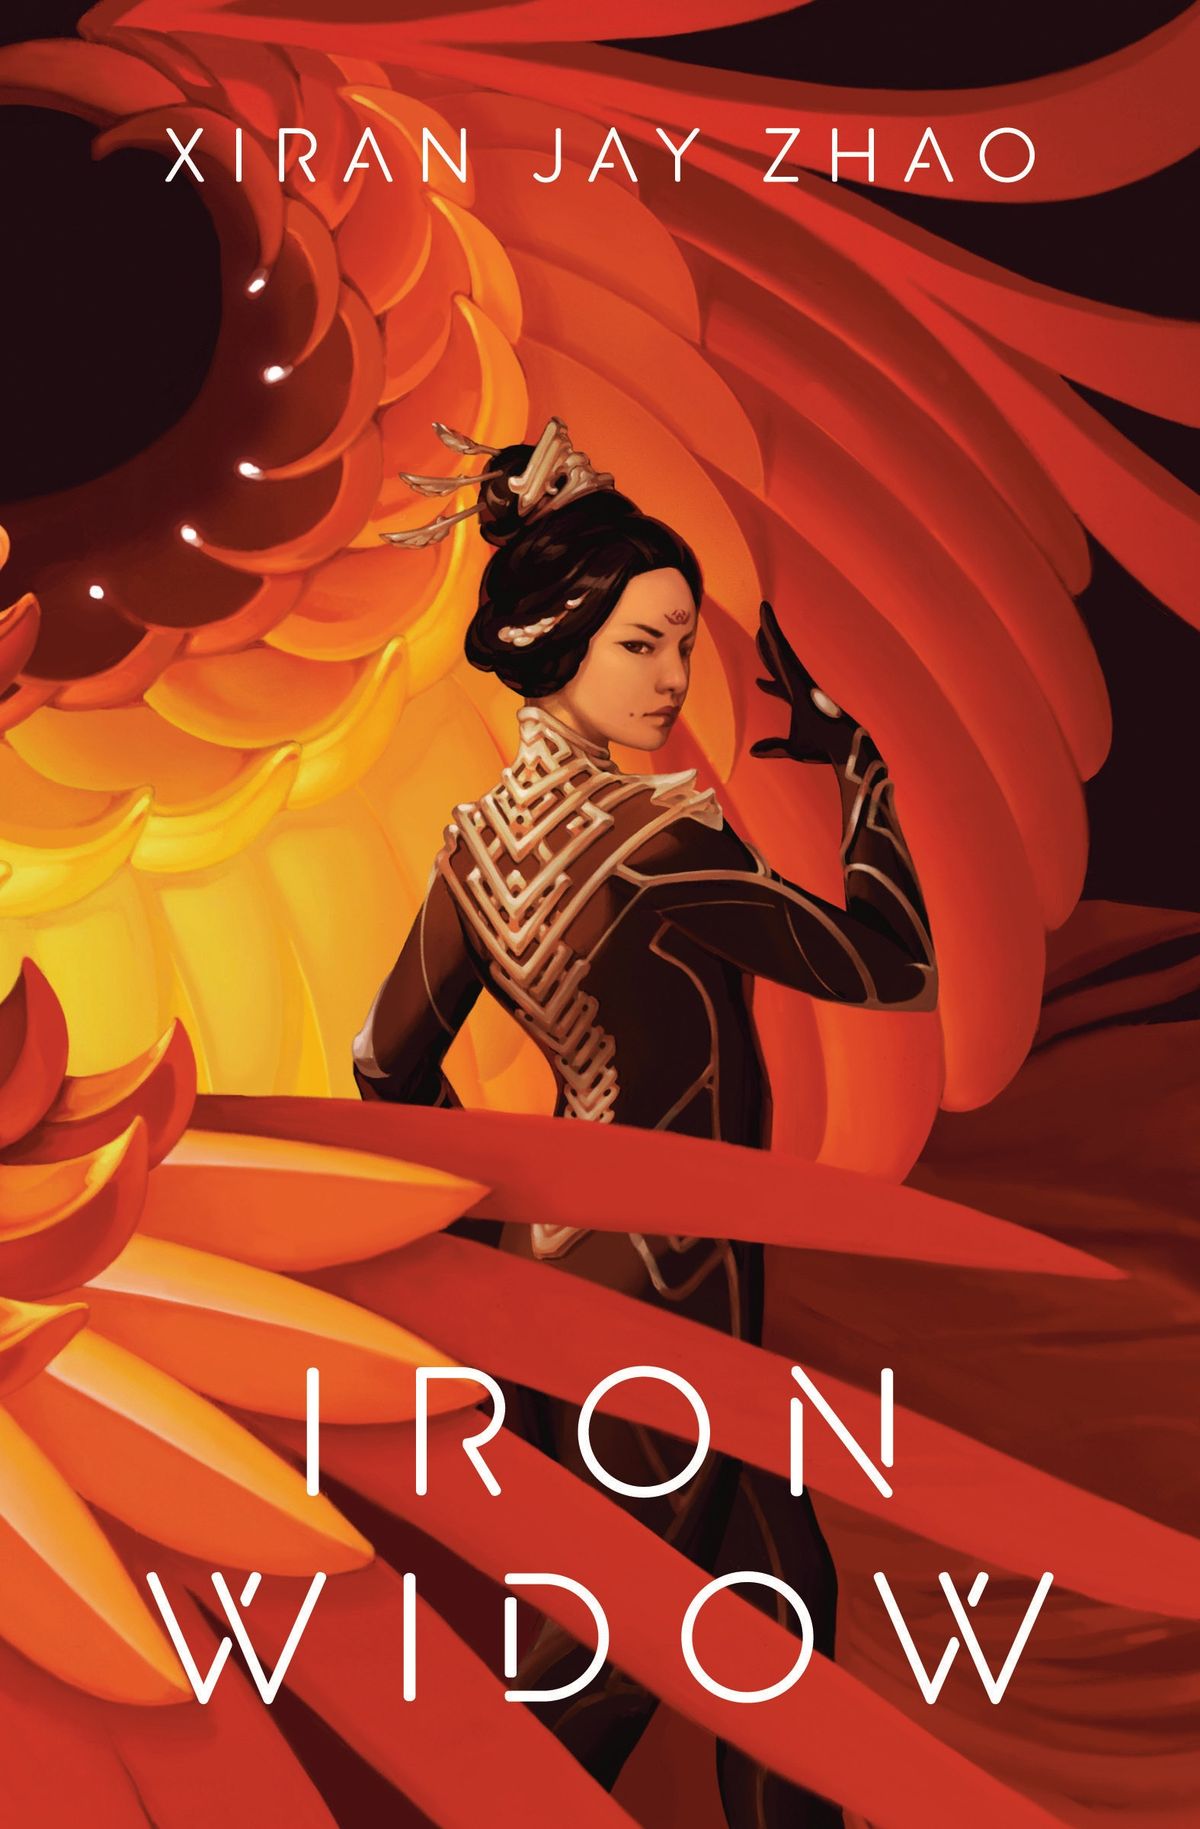 La viuda de hierro de Xiran Jay Zhao combina la antigua cultura china y la ciencia ficción mecánica